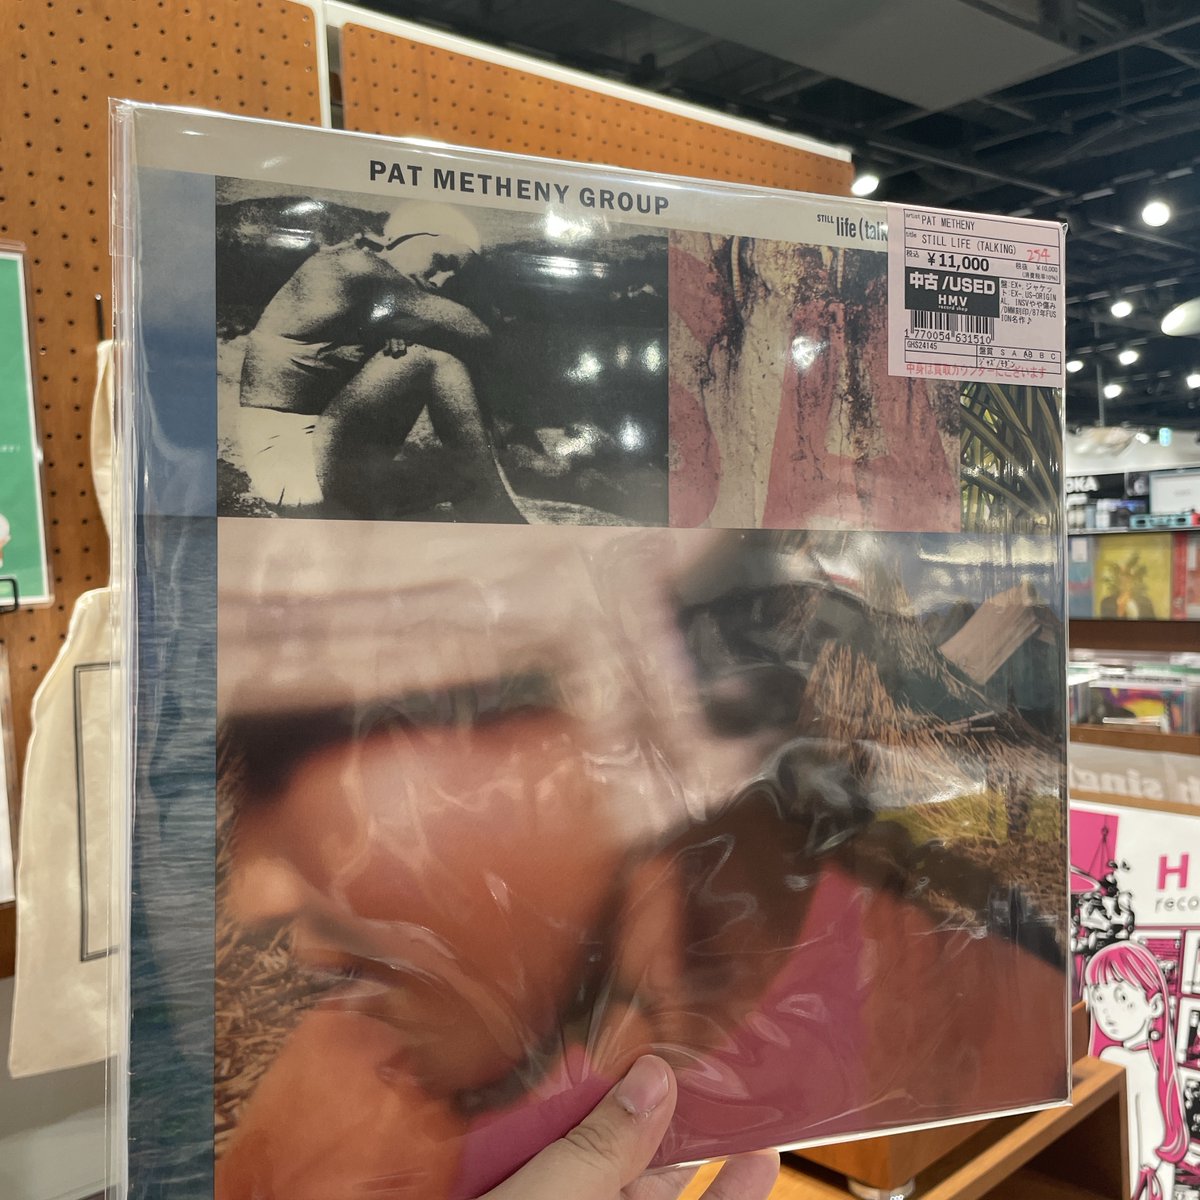 本日も11時より新着品どっさり出して開店してます！
店内BGMはPat Metheny Group『Still Life (Talking)』！
これからの季節にマストバイ！
本日もご来店お待ちしております！
#Osaka #vinylshop  #vinylrecords #recordstore #アナログ #レコード #Shinsaibashi